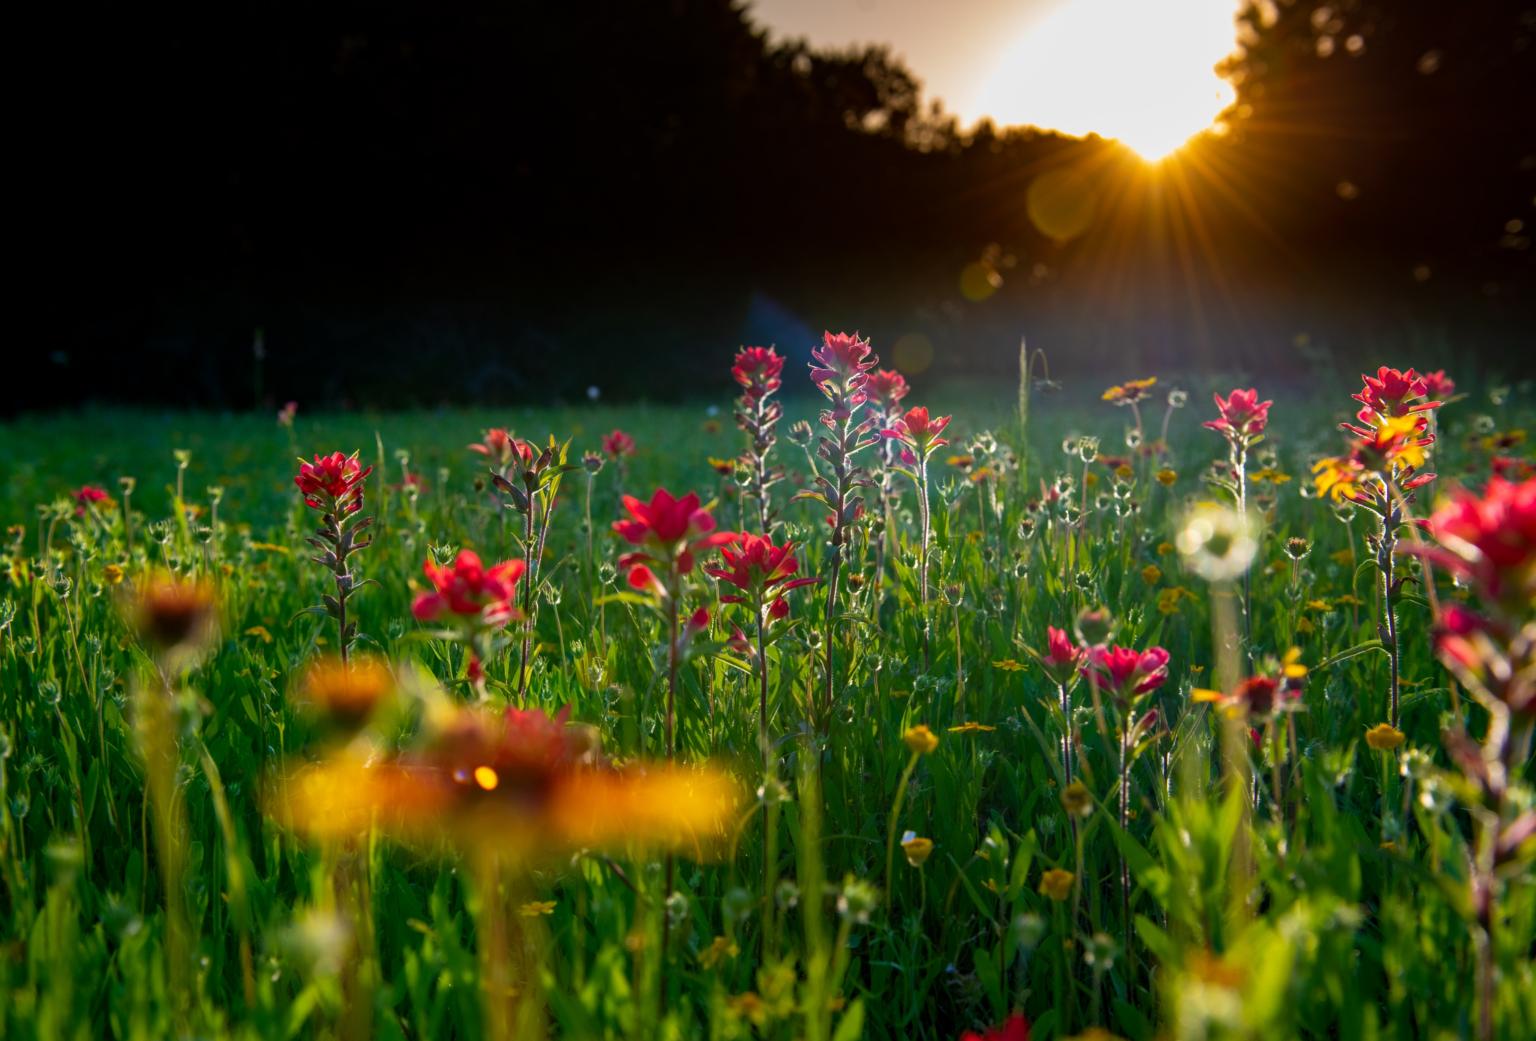 Wildblumenwiese (c) Bild von S. Hermann & F. Richter auf Pixabay